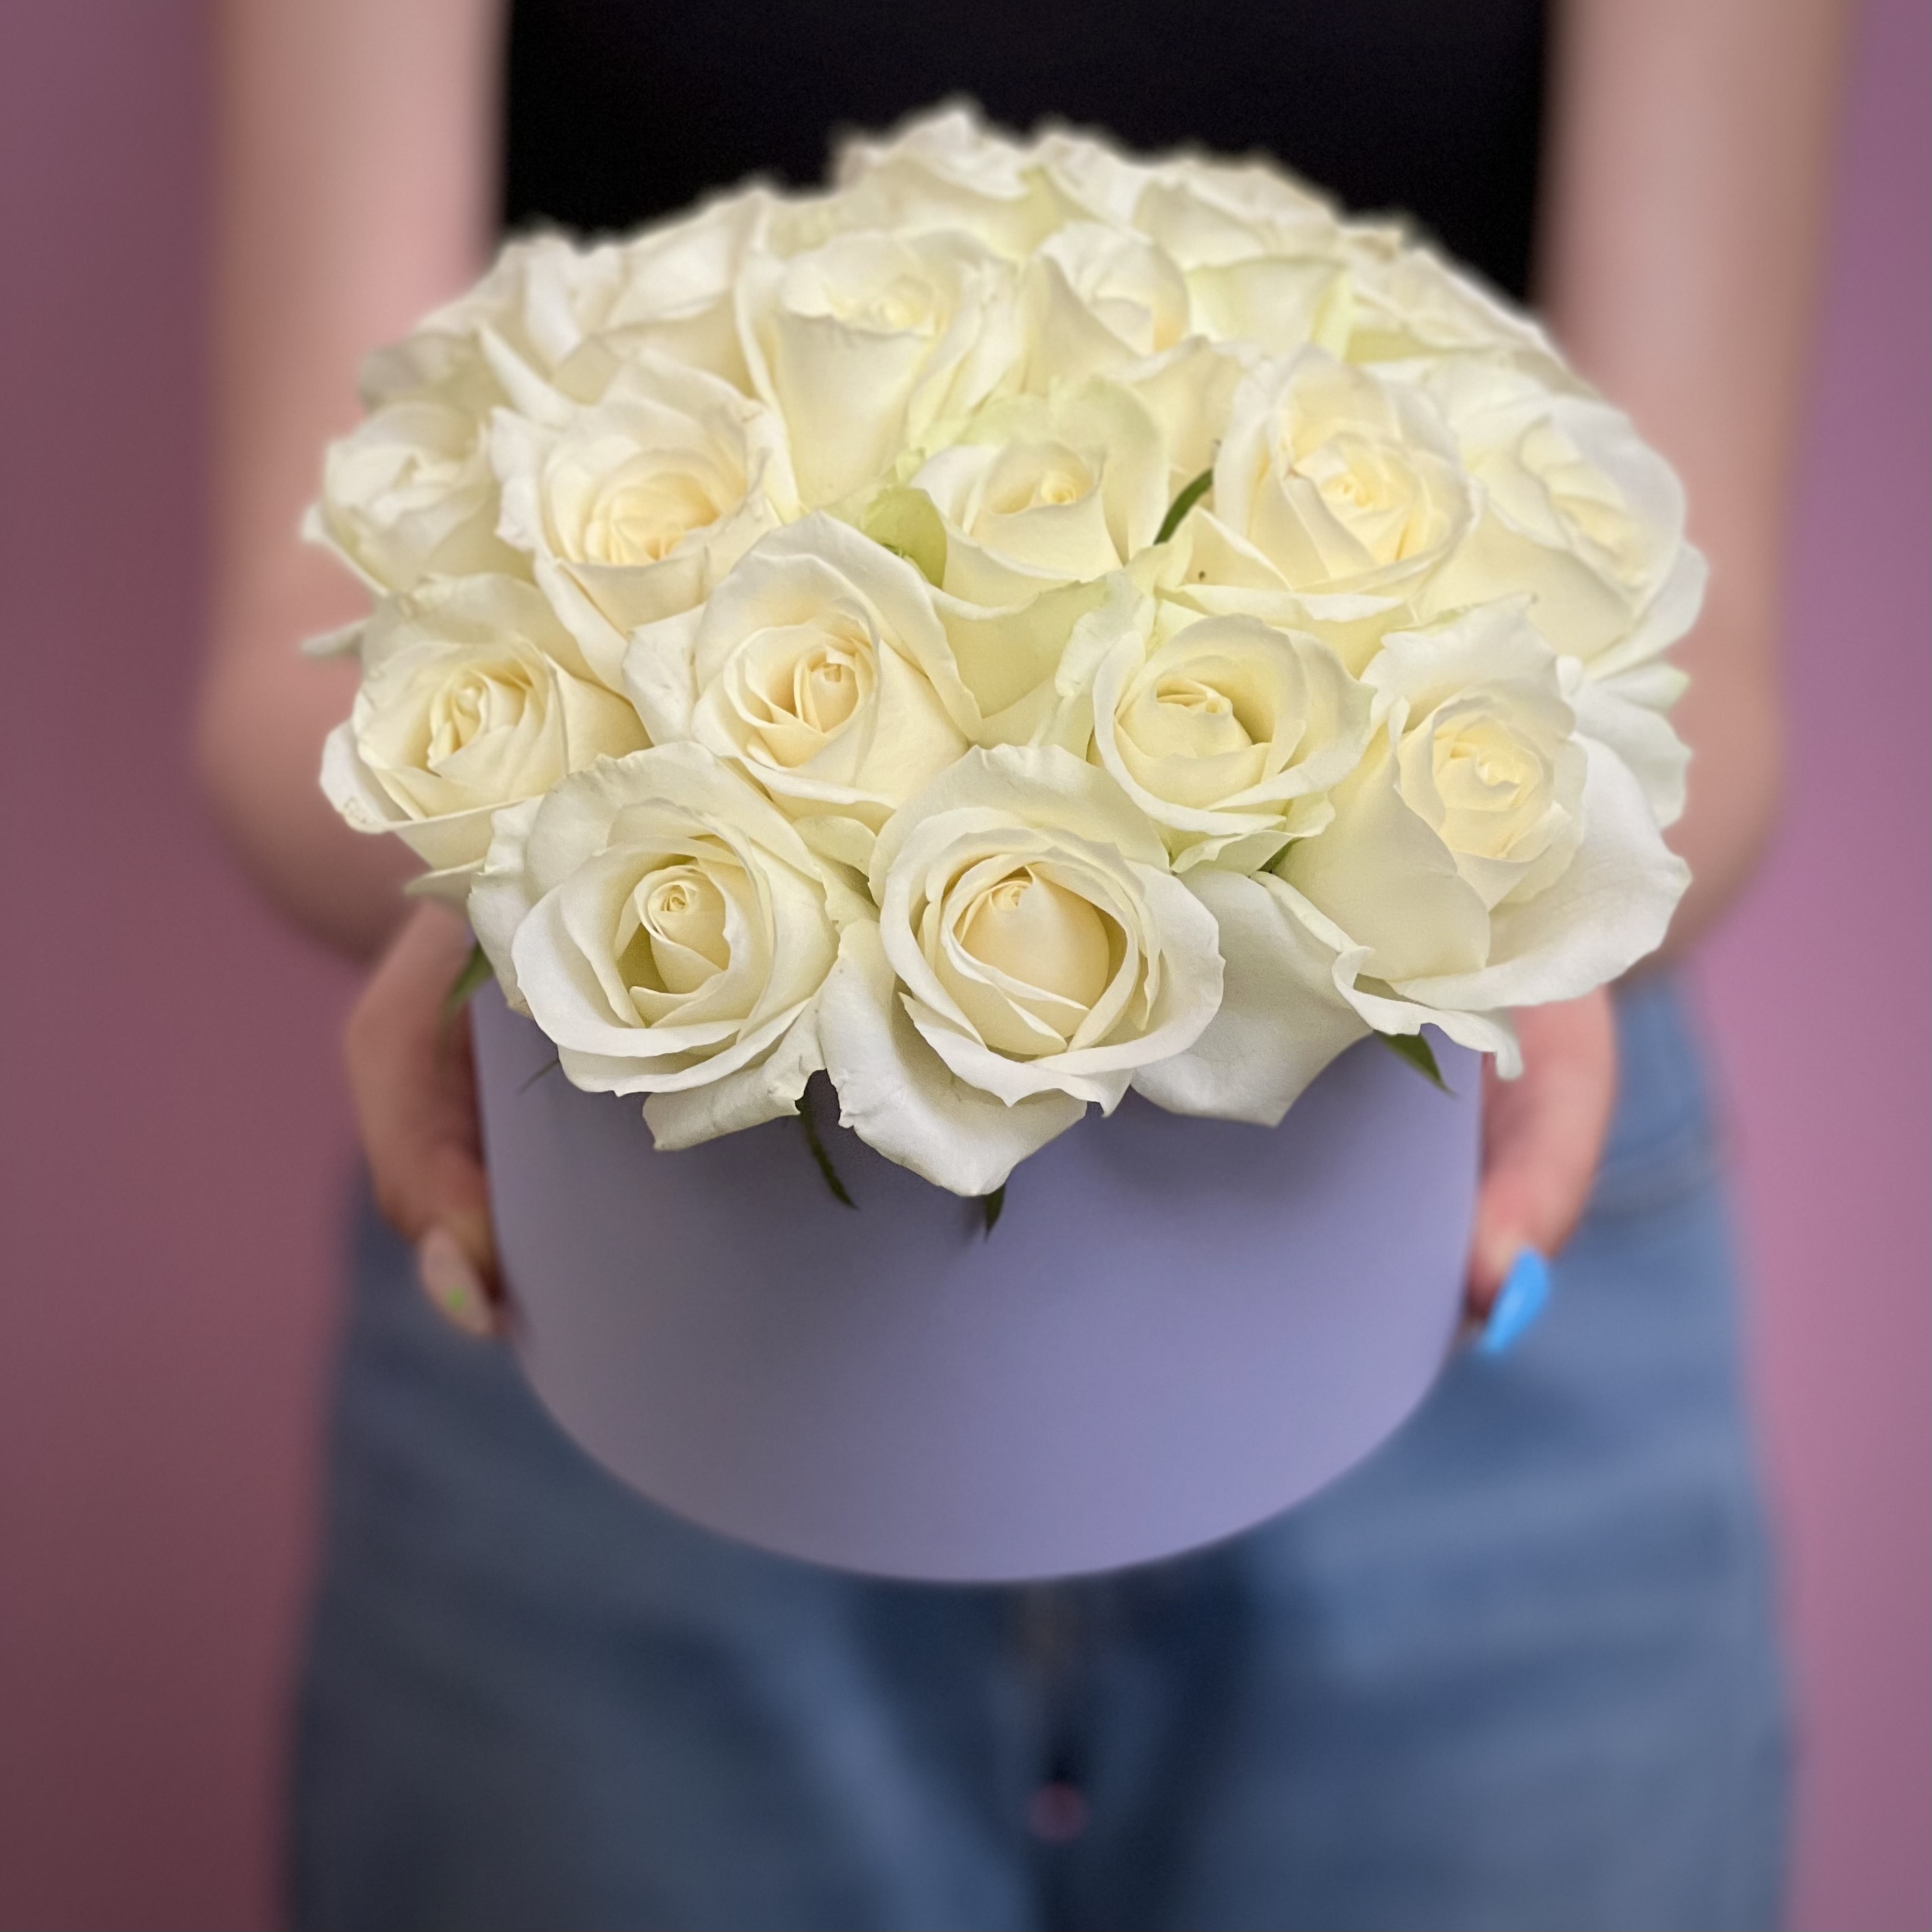 Белые розы в шляпной коробке S комплект домашний lilians m558 размер 96 белые розы белые розы